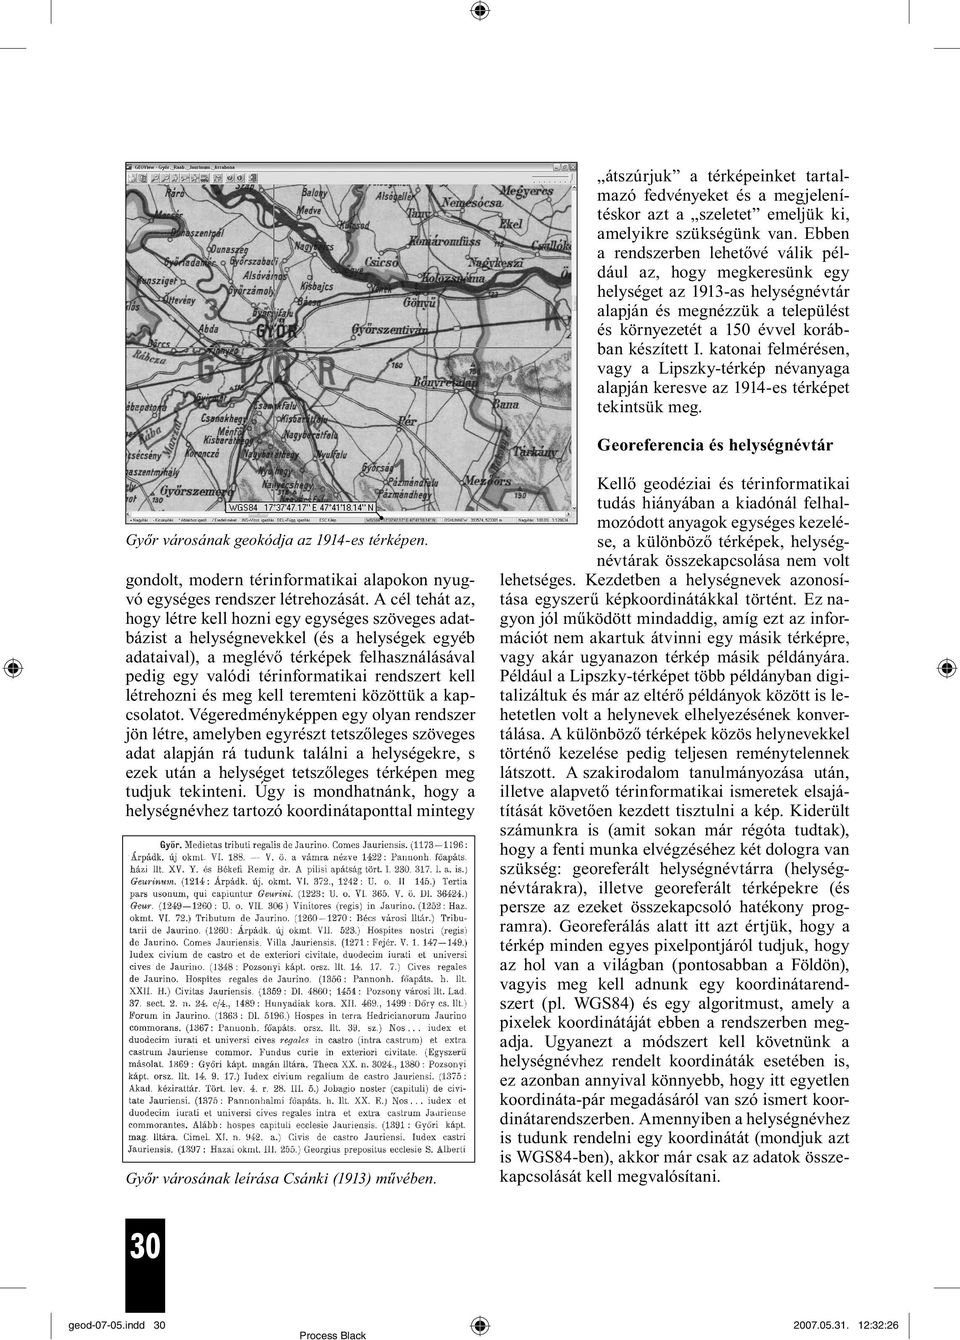 katonai felmérésen, vagy a Lipszky-térkép névanyaga alapján keresve az 1914-es térképet tekintsük meg. Georeferencia és helységnévtár Győr városának geokódja az 1914-es térképen.